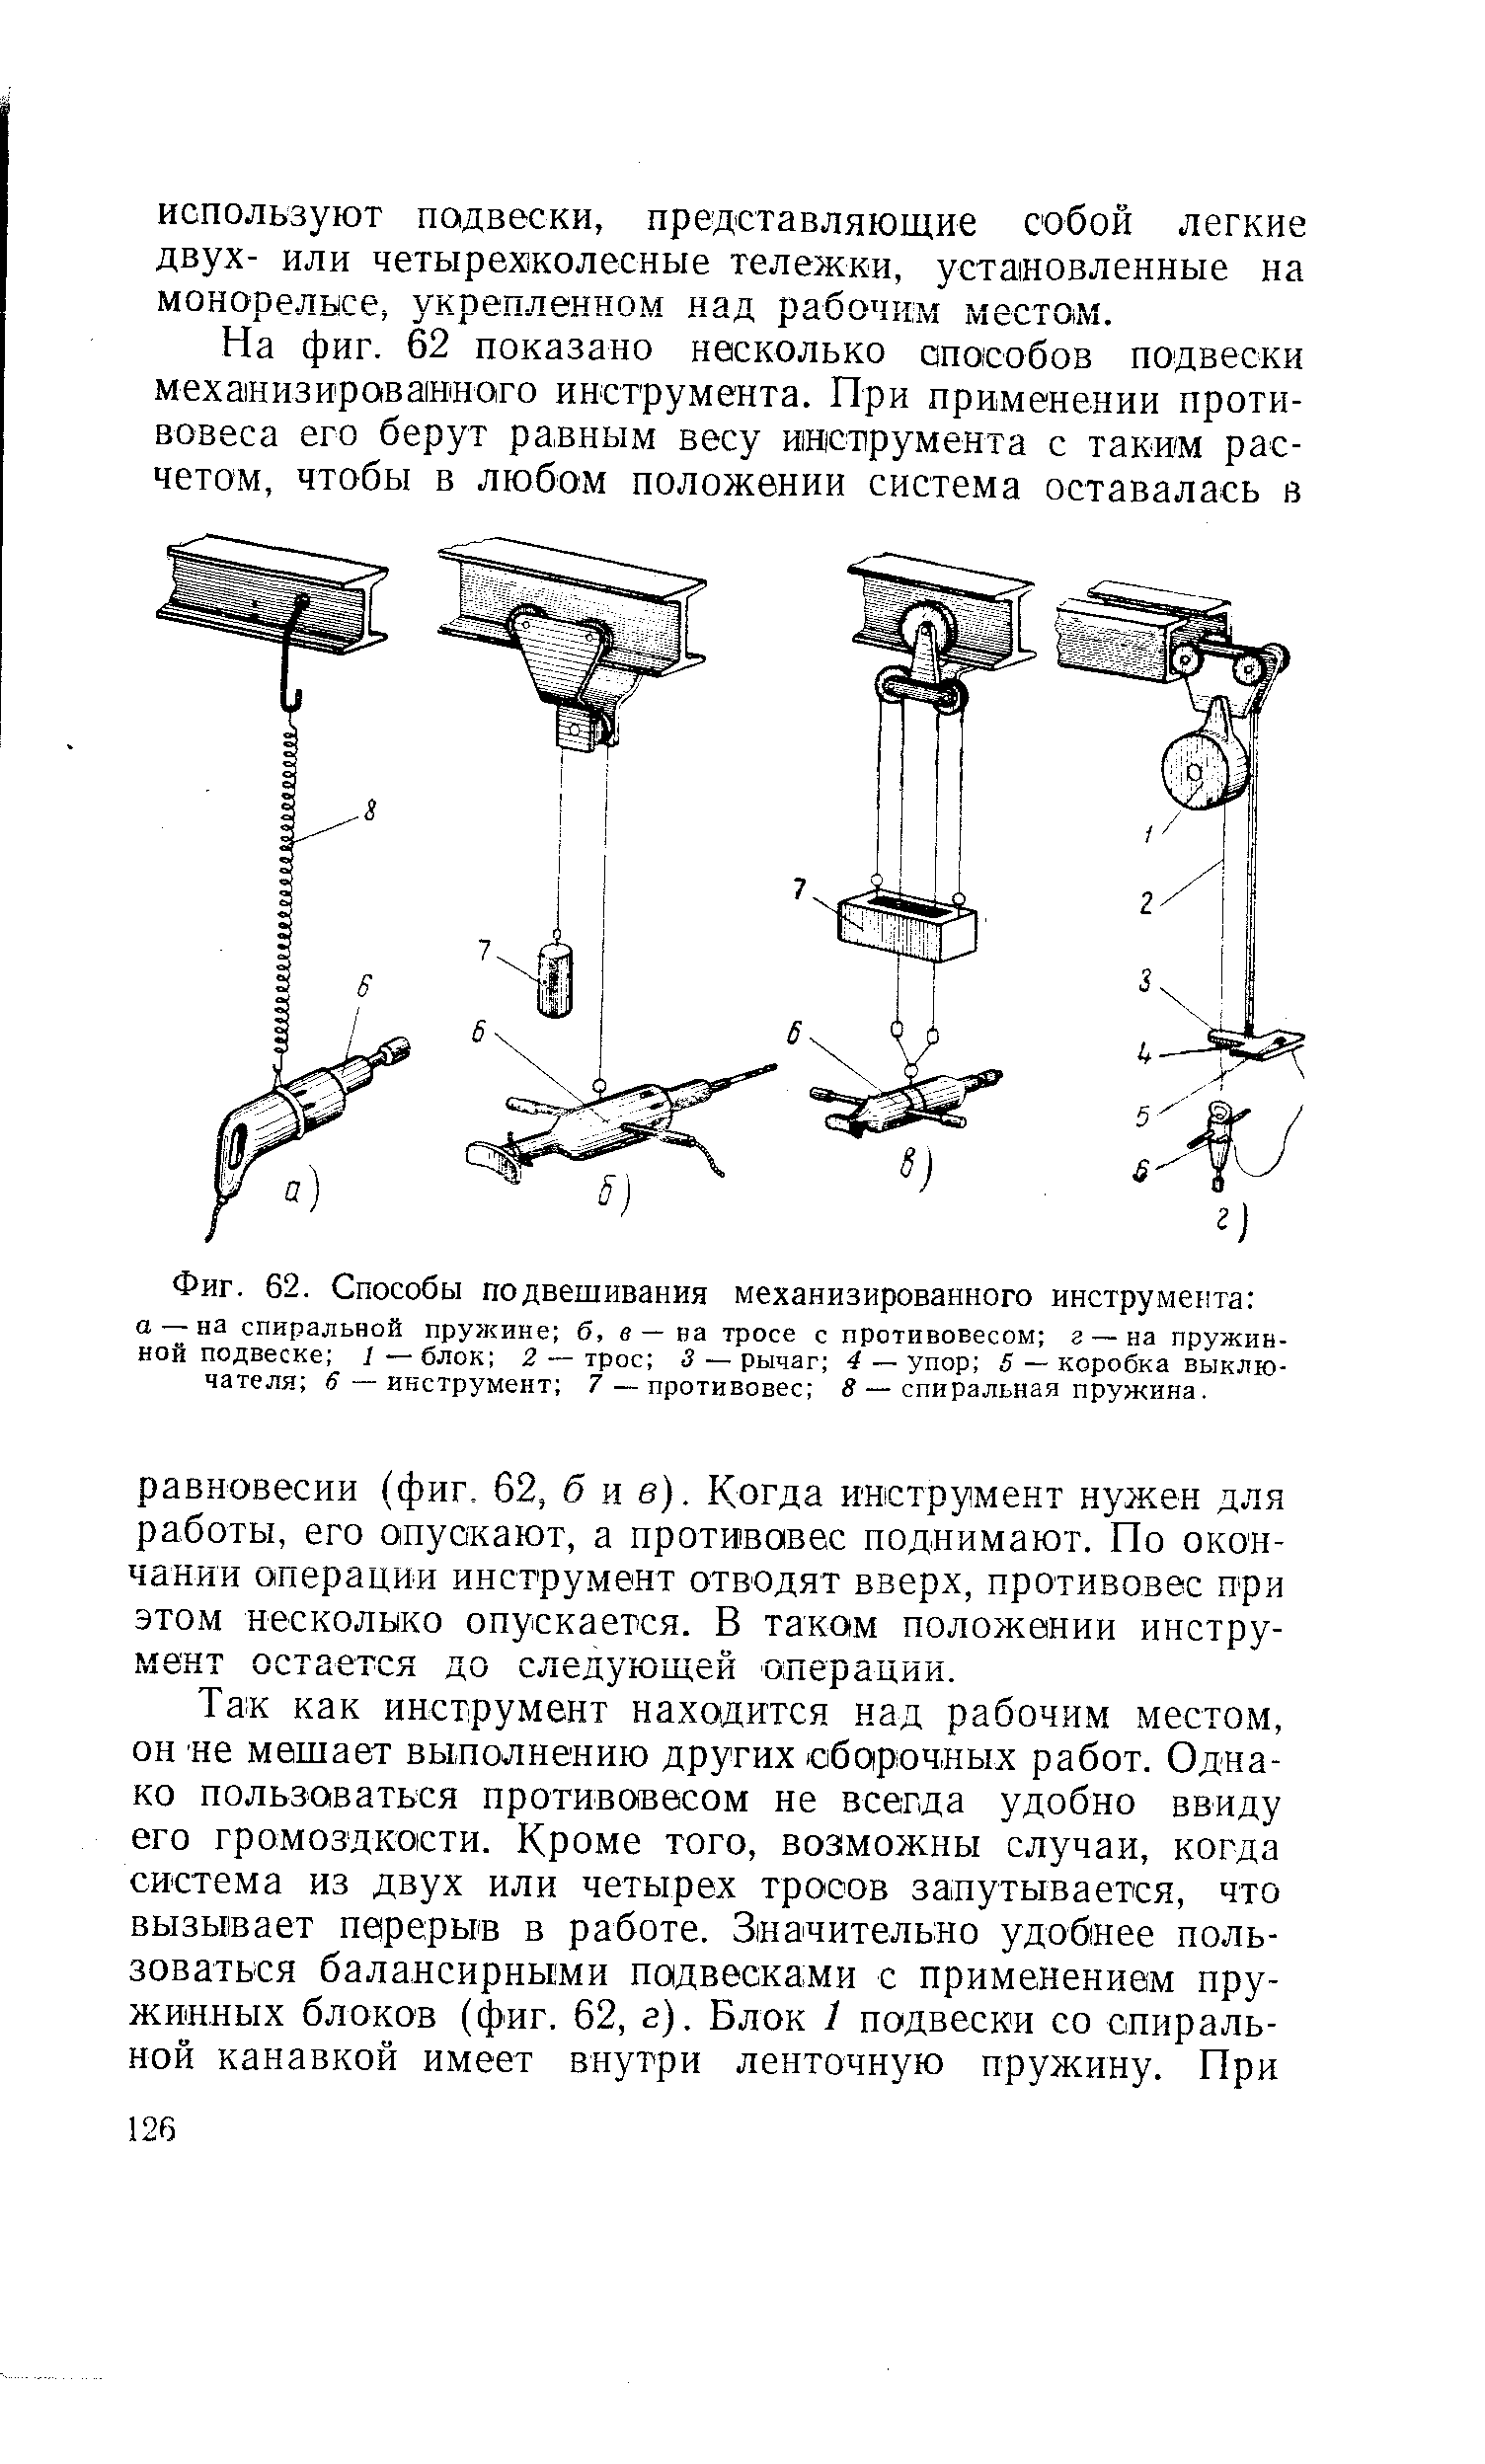 Фиг. 62. Способы подвешивания механизированного инструмента 
